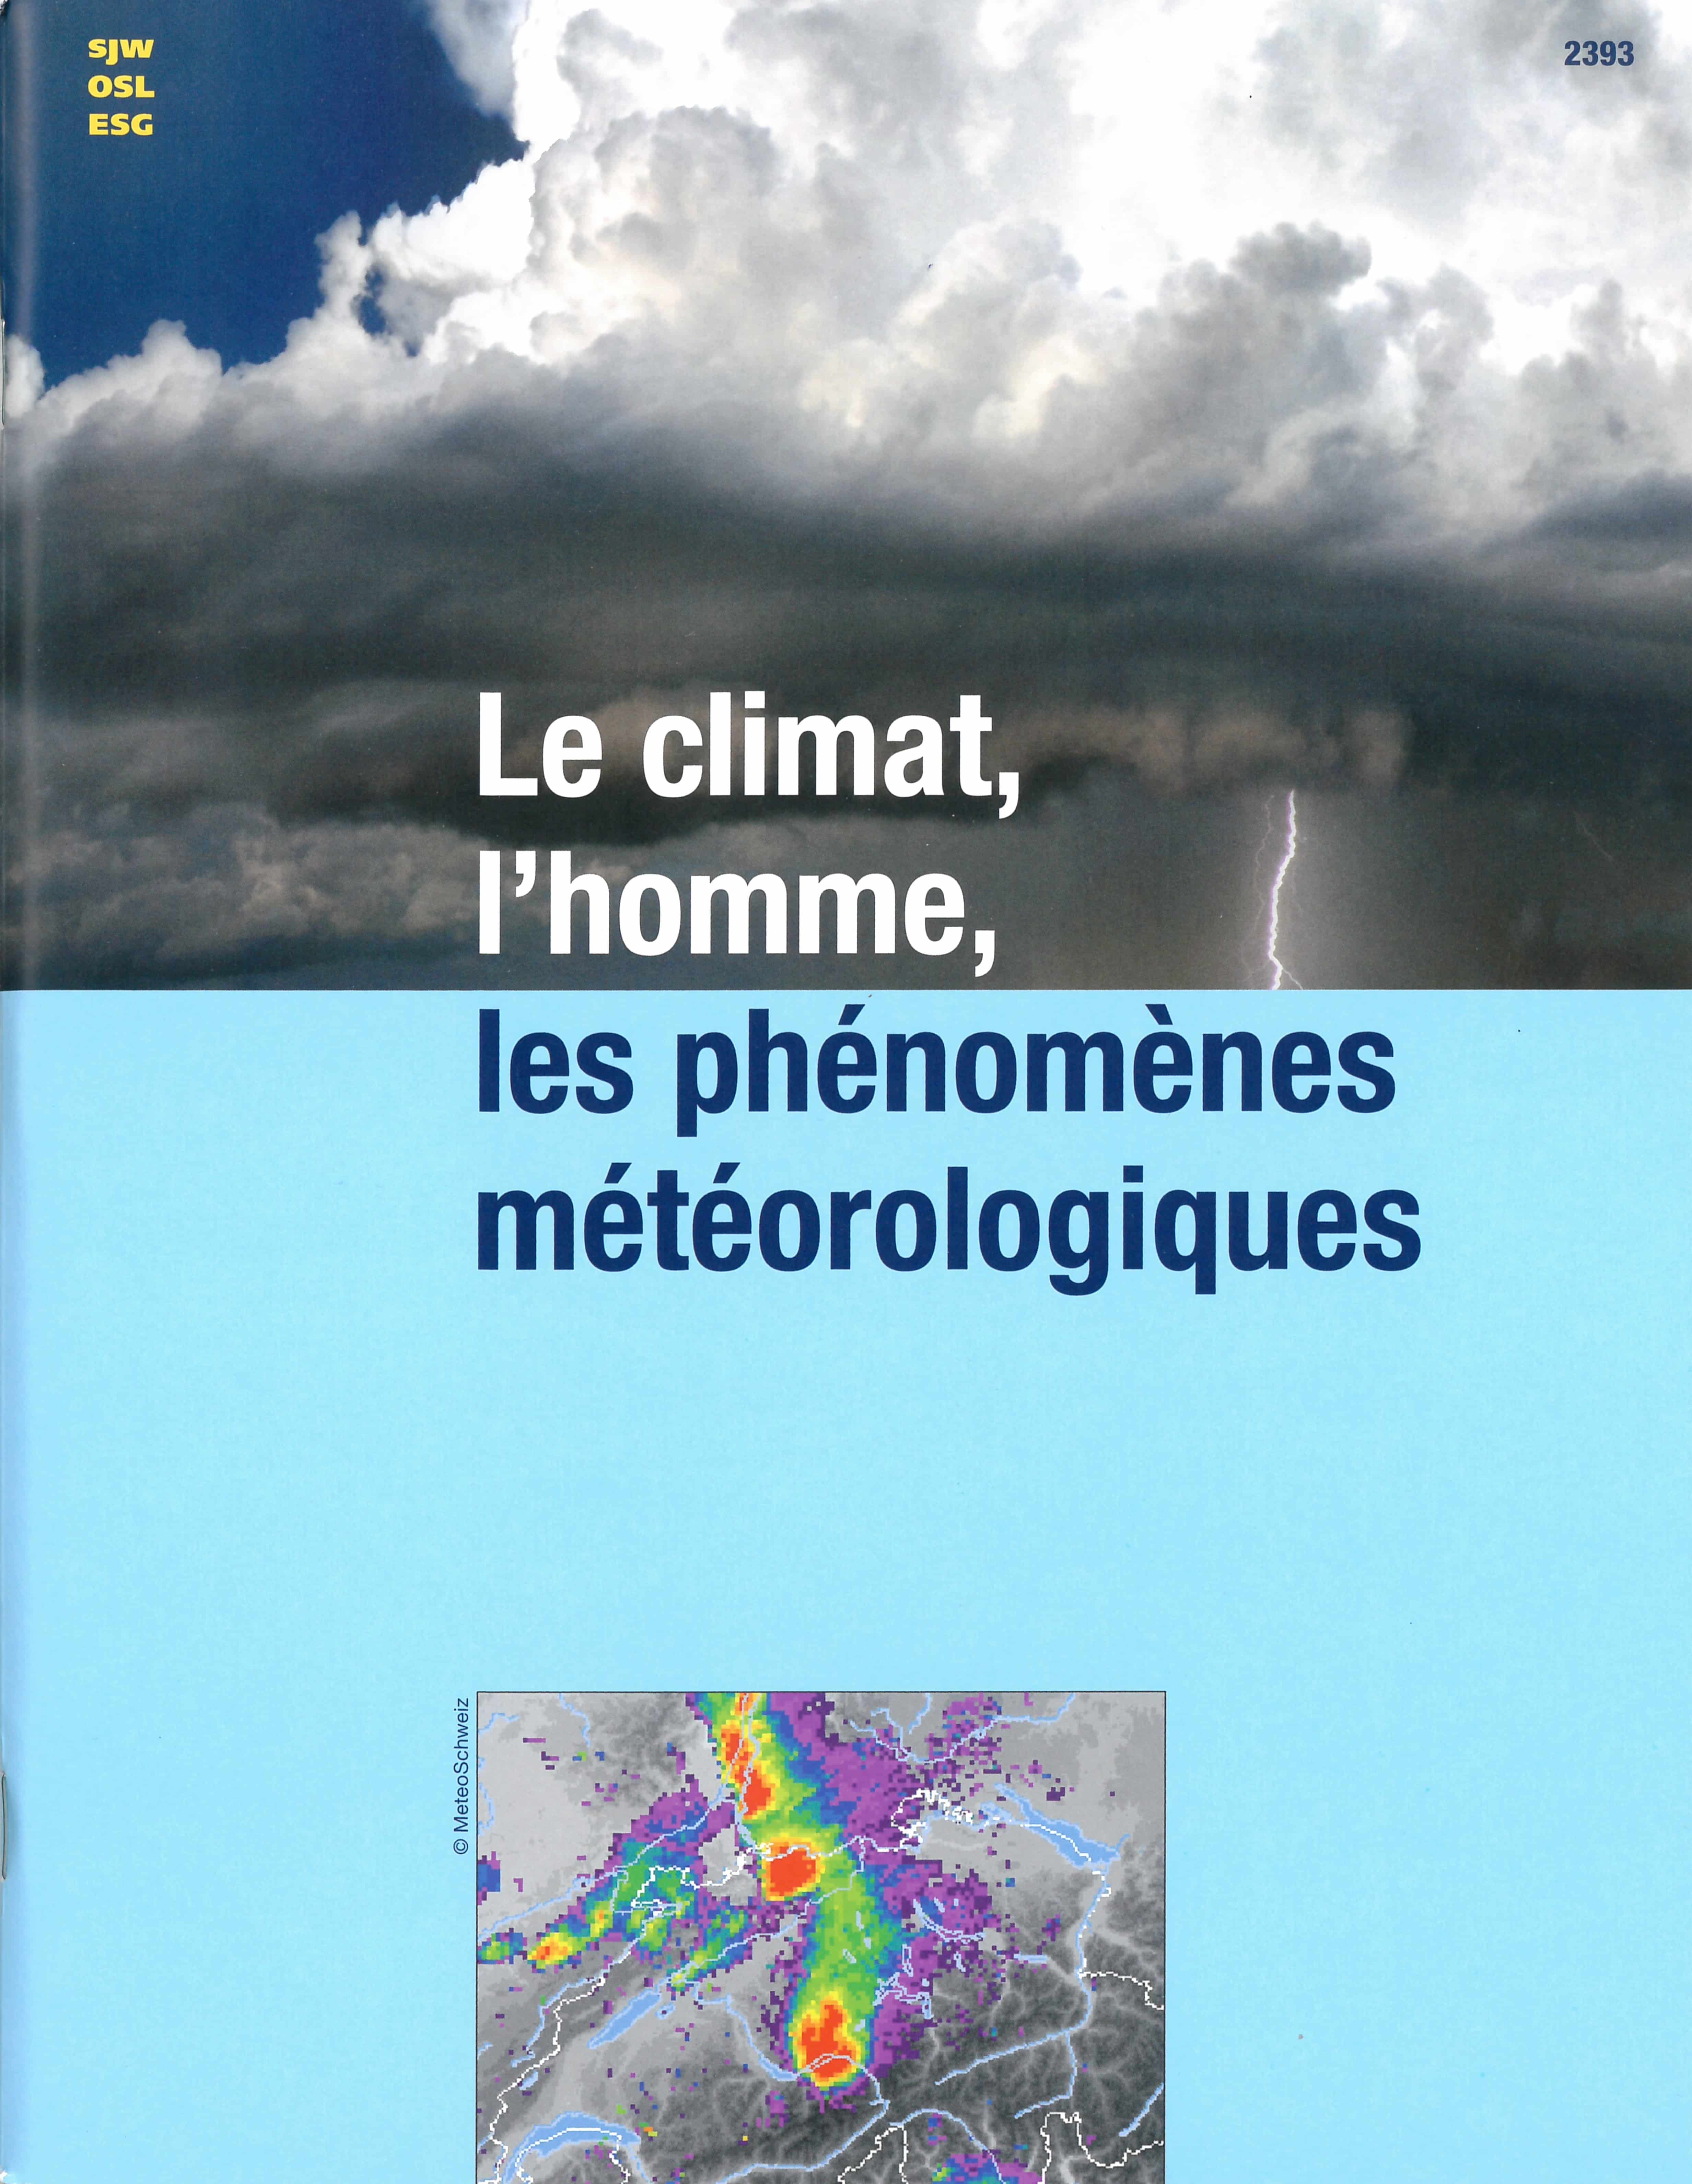 Le climat, l'homme, les phénomènes météorologiques